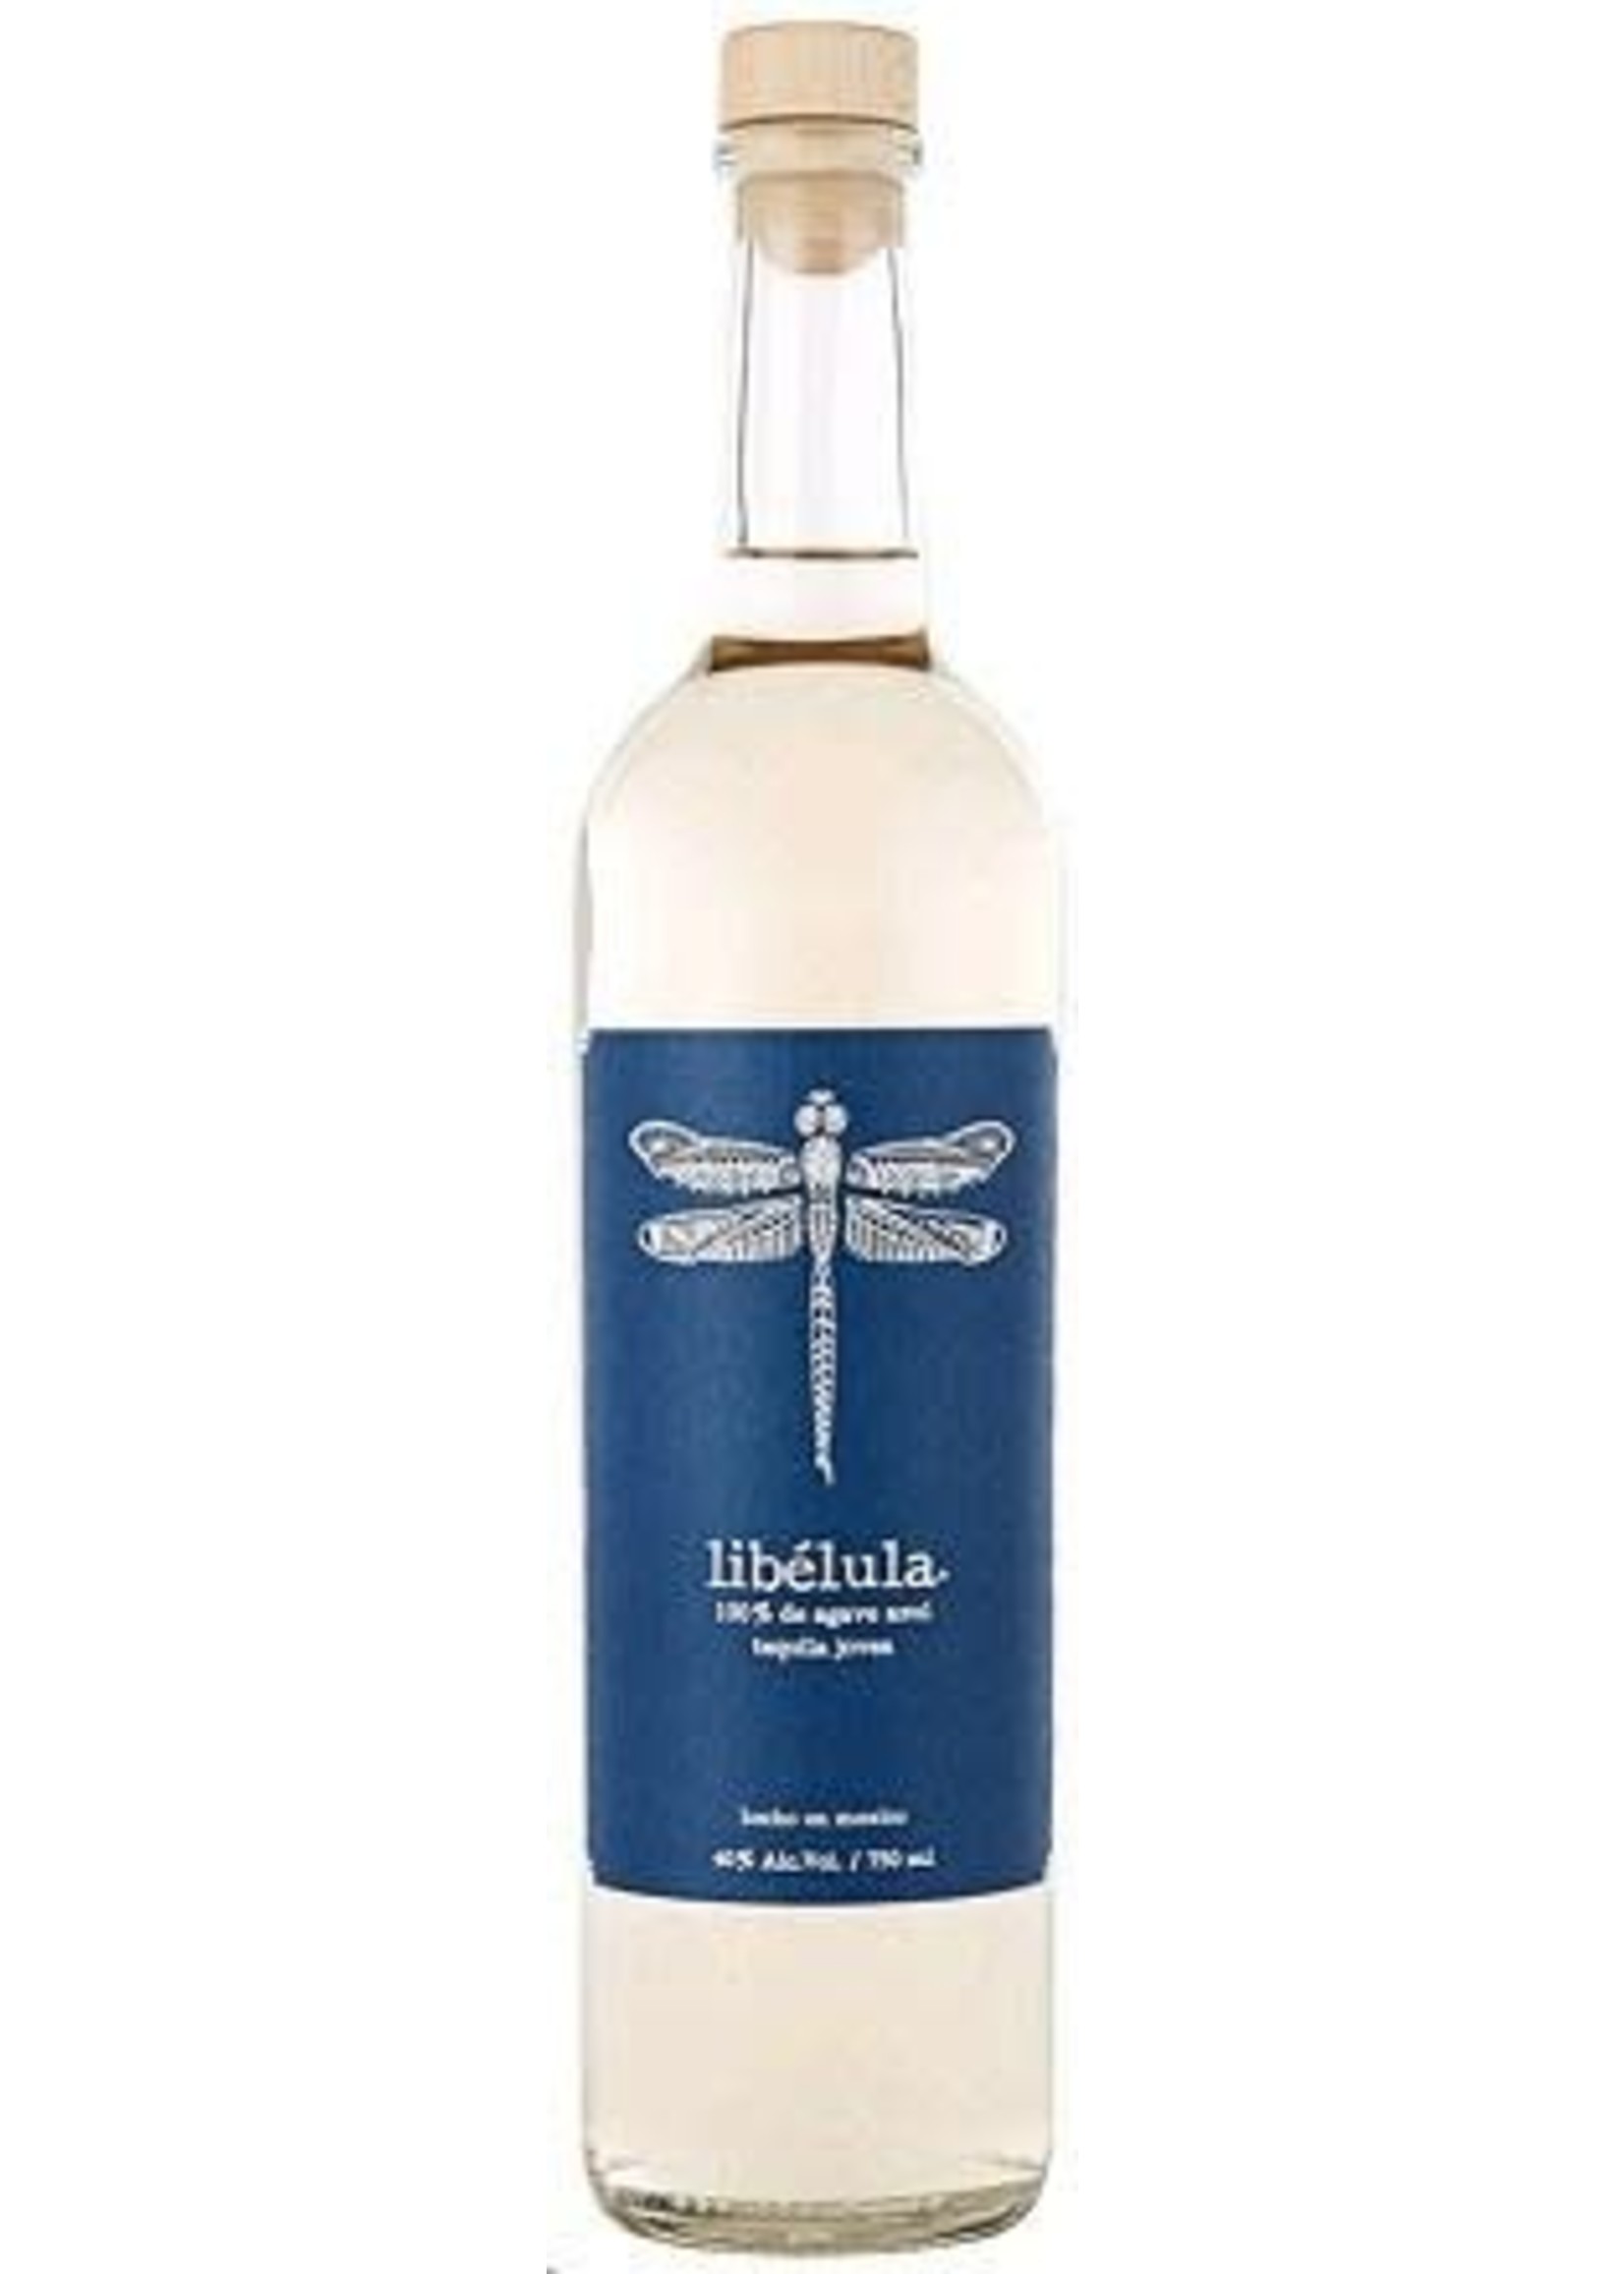 Libelula Libelula / Tequila Joven 40% abv